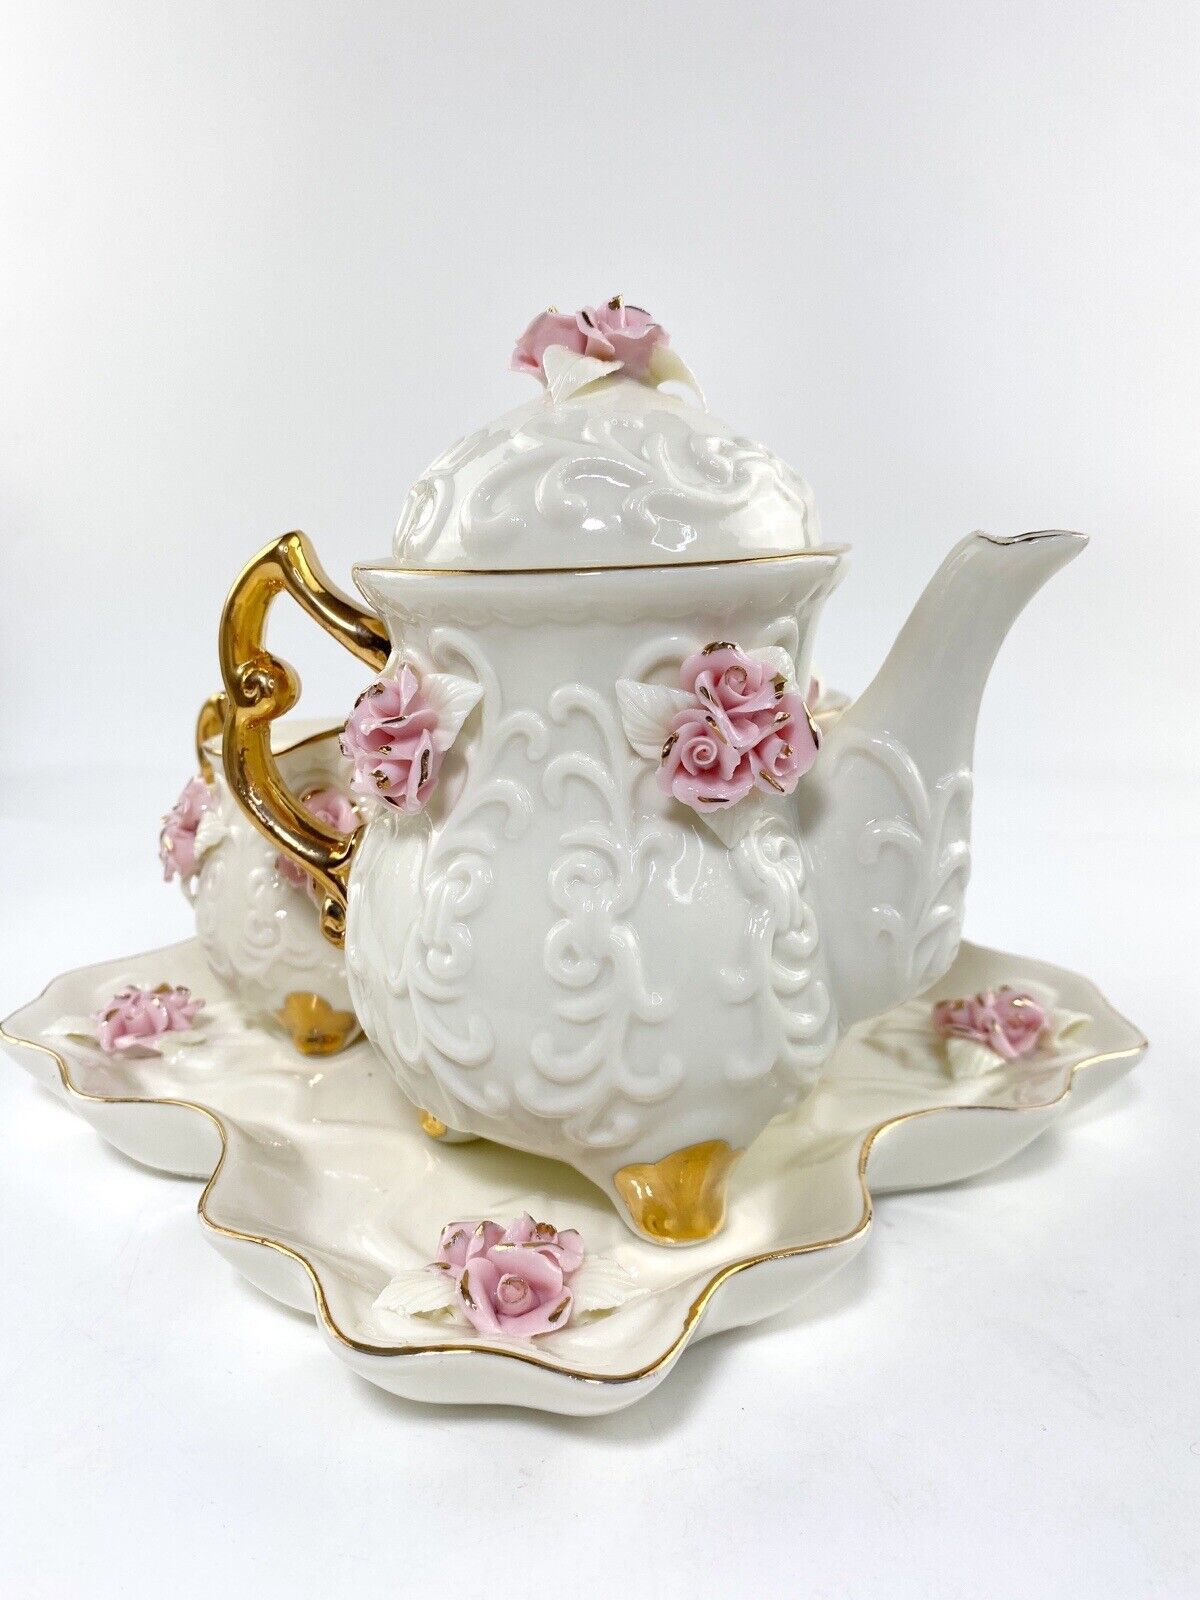 Imperfect Cracker Barrel Ivory Porcelain 6PC Tea Set W/ Pink Roses and Gold Trim | eBay US